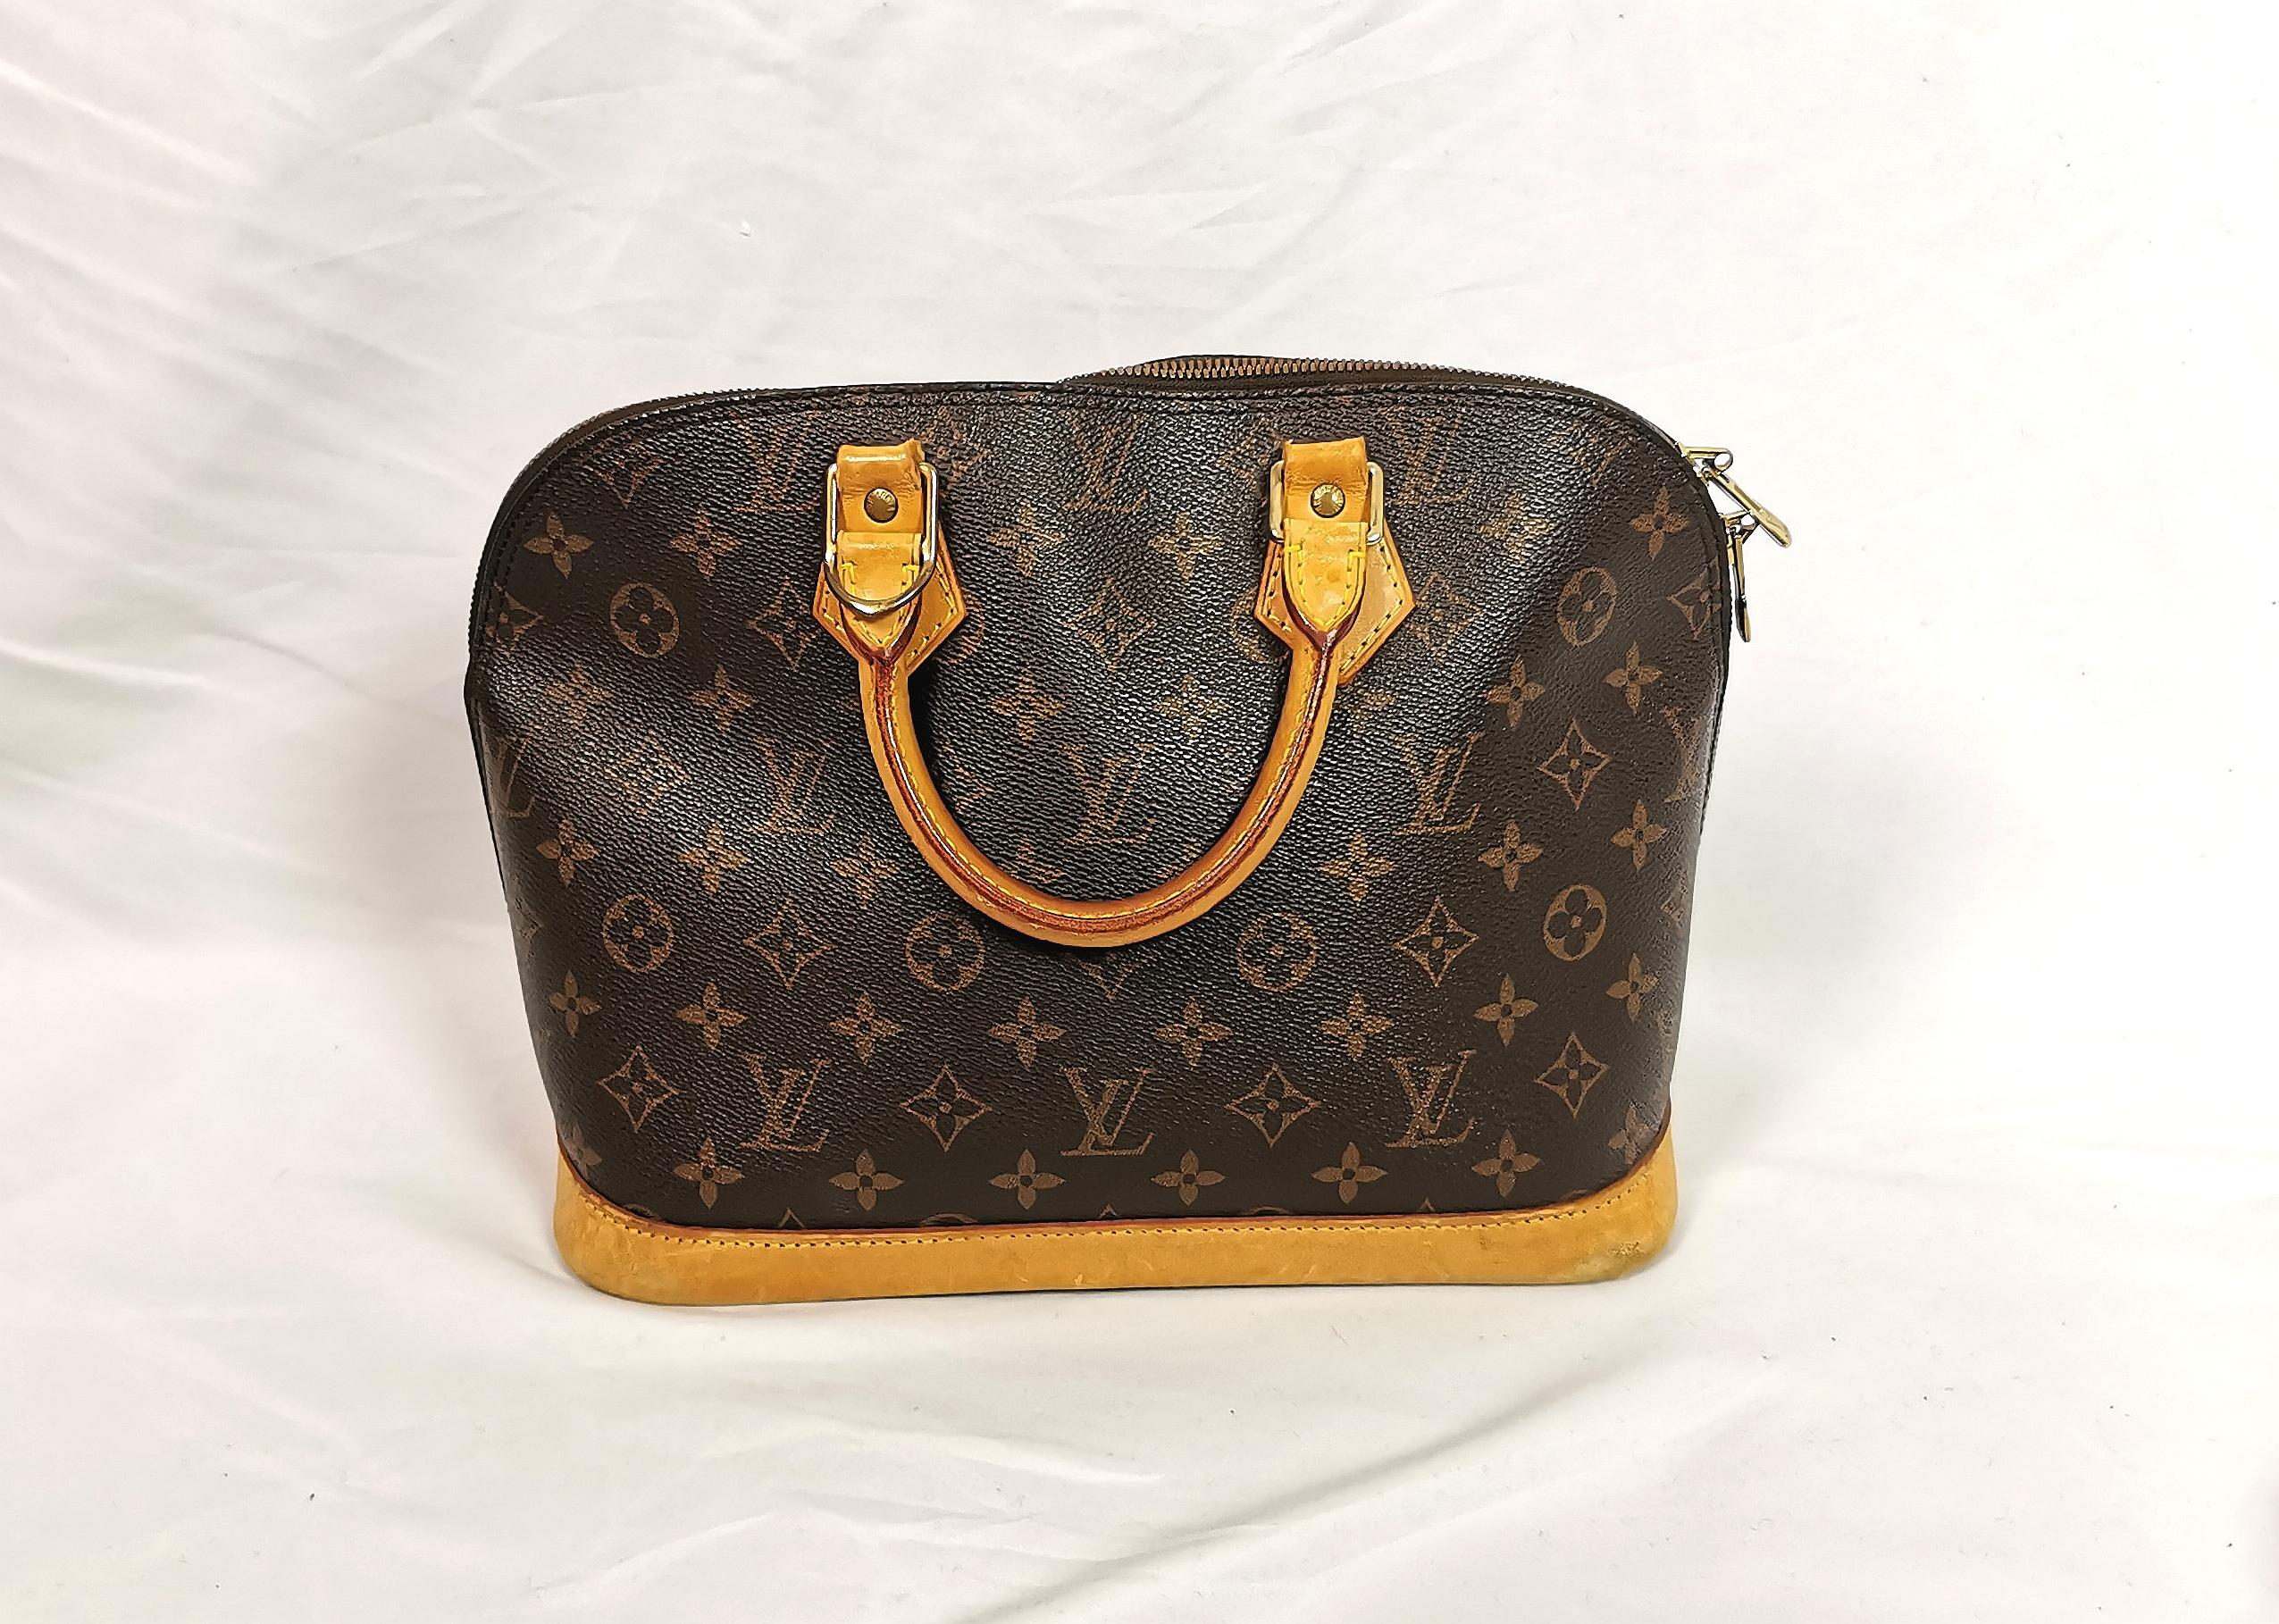 Un magnifique sac à main classique Louis Vuitton Alma MM à poignée supérieure.

Toile coates avec le monogramme signature de LV, garniture et poignées en cuir Vachetta avec quincaillerie ton or.

Doublure en tissu de coton brun.

Ce design est un